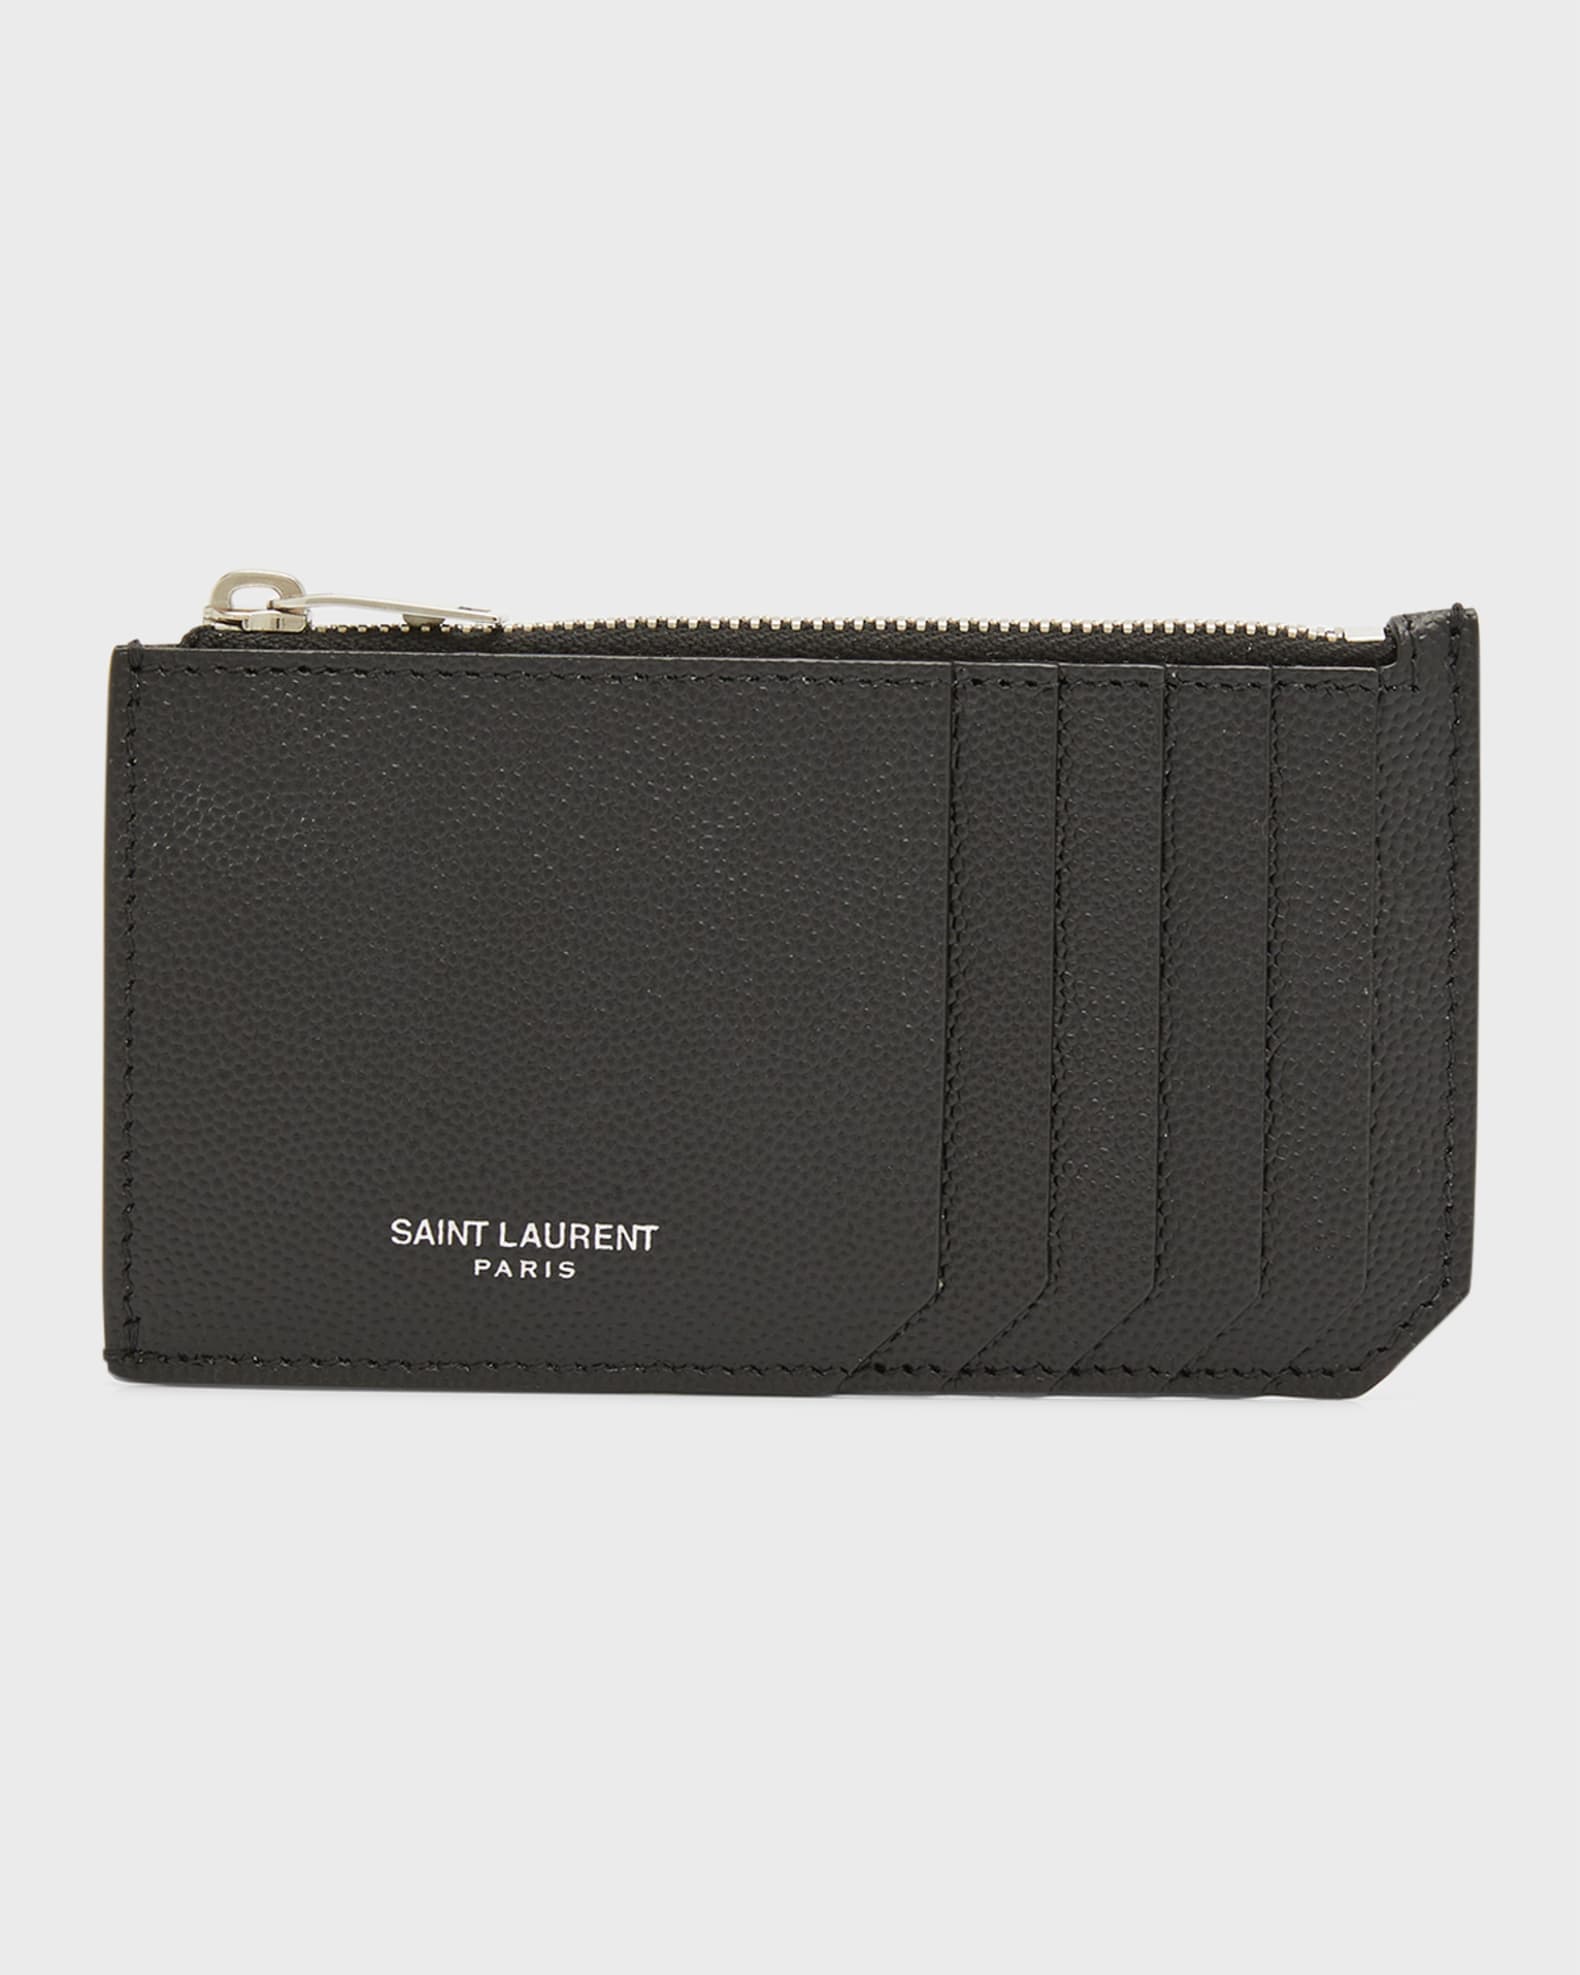 Saint Laurent Men's Zip Wallet